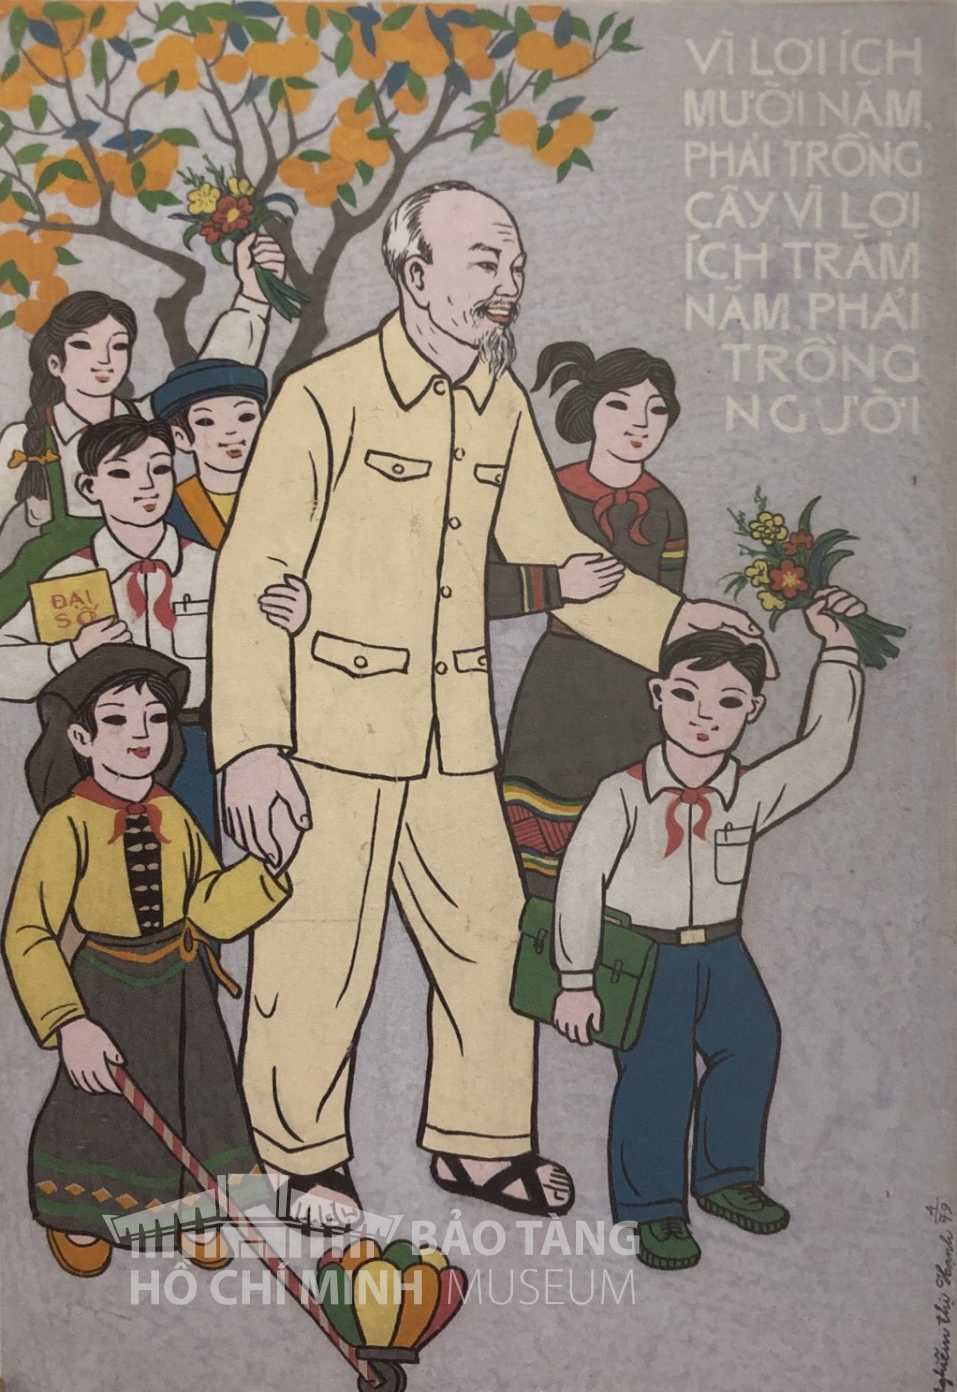 Tranh: Nghiêm Thị Hạnh
Bột màu, 1979
Nguồn: Bảo tàng Hồ Chí Minh